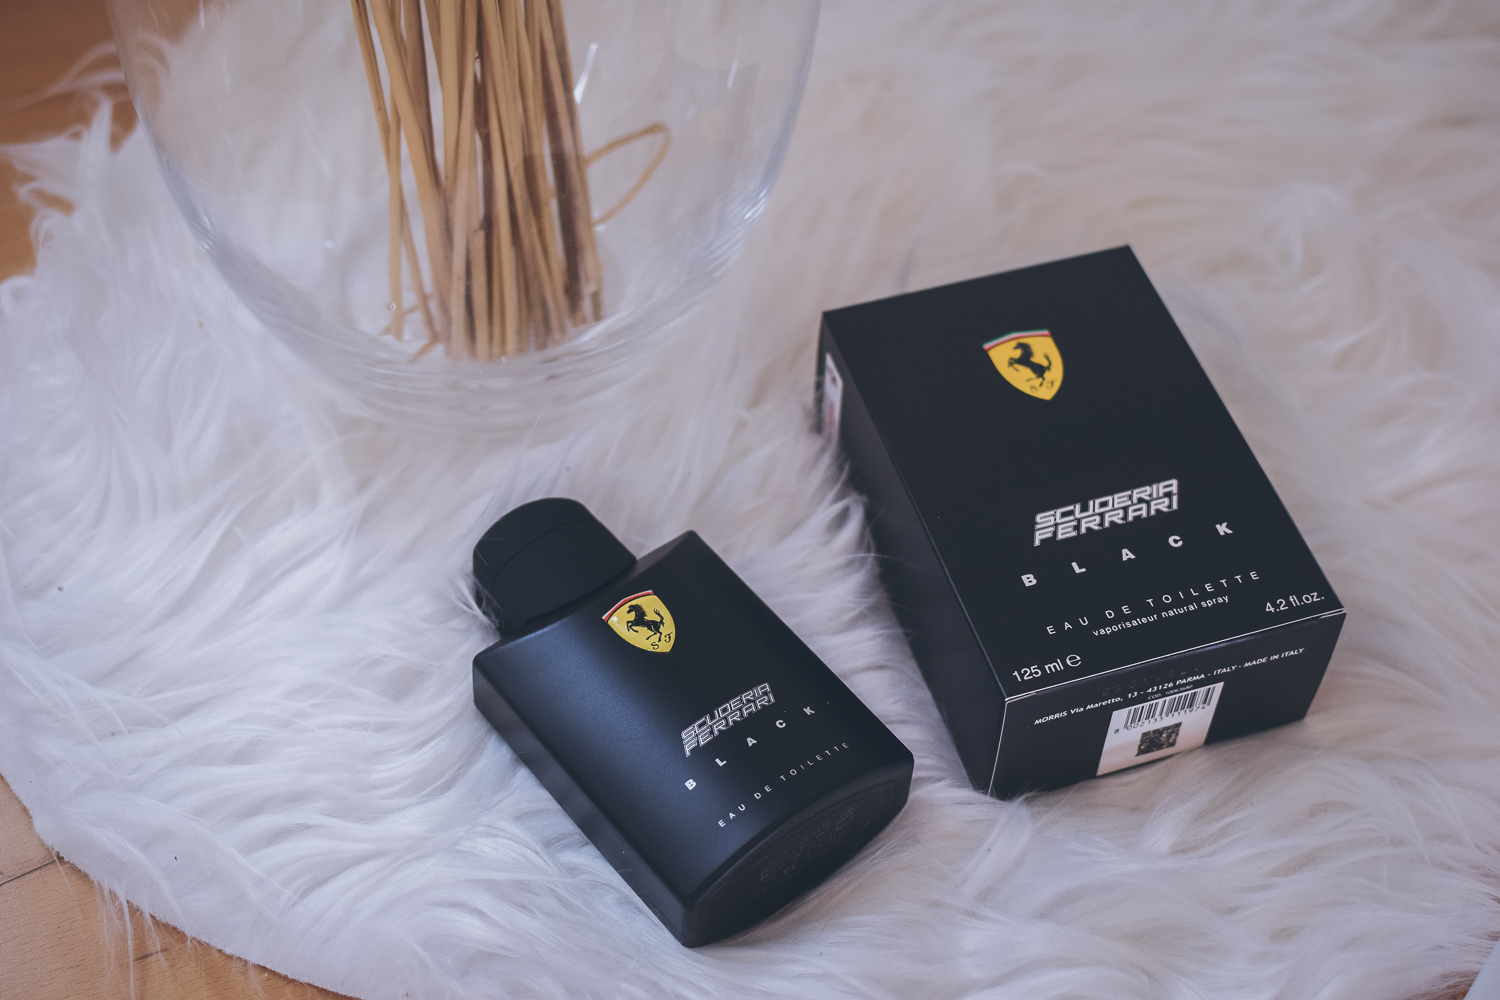 Black Scuderia Herrenparfum vom Edel-Label Ferrari